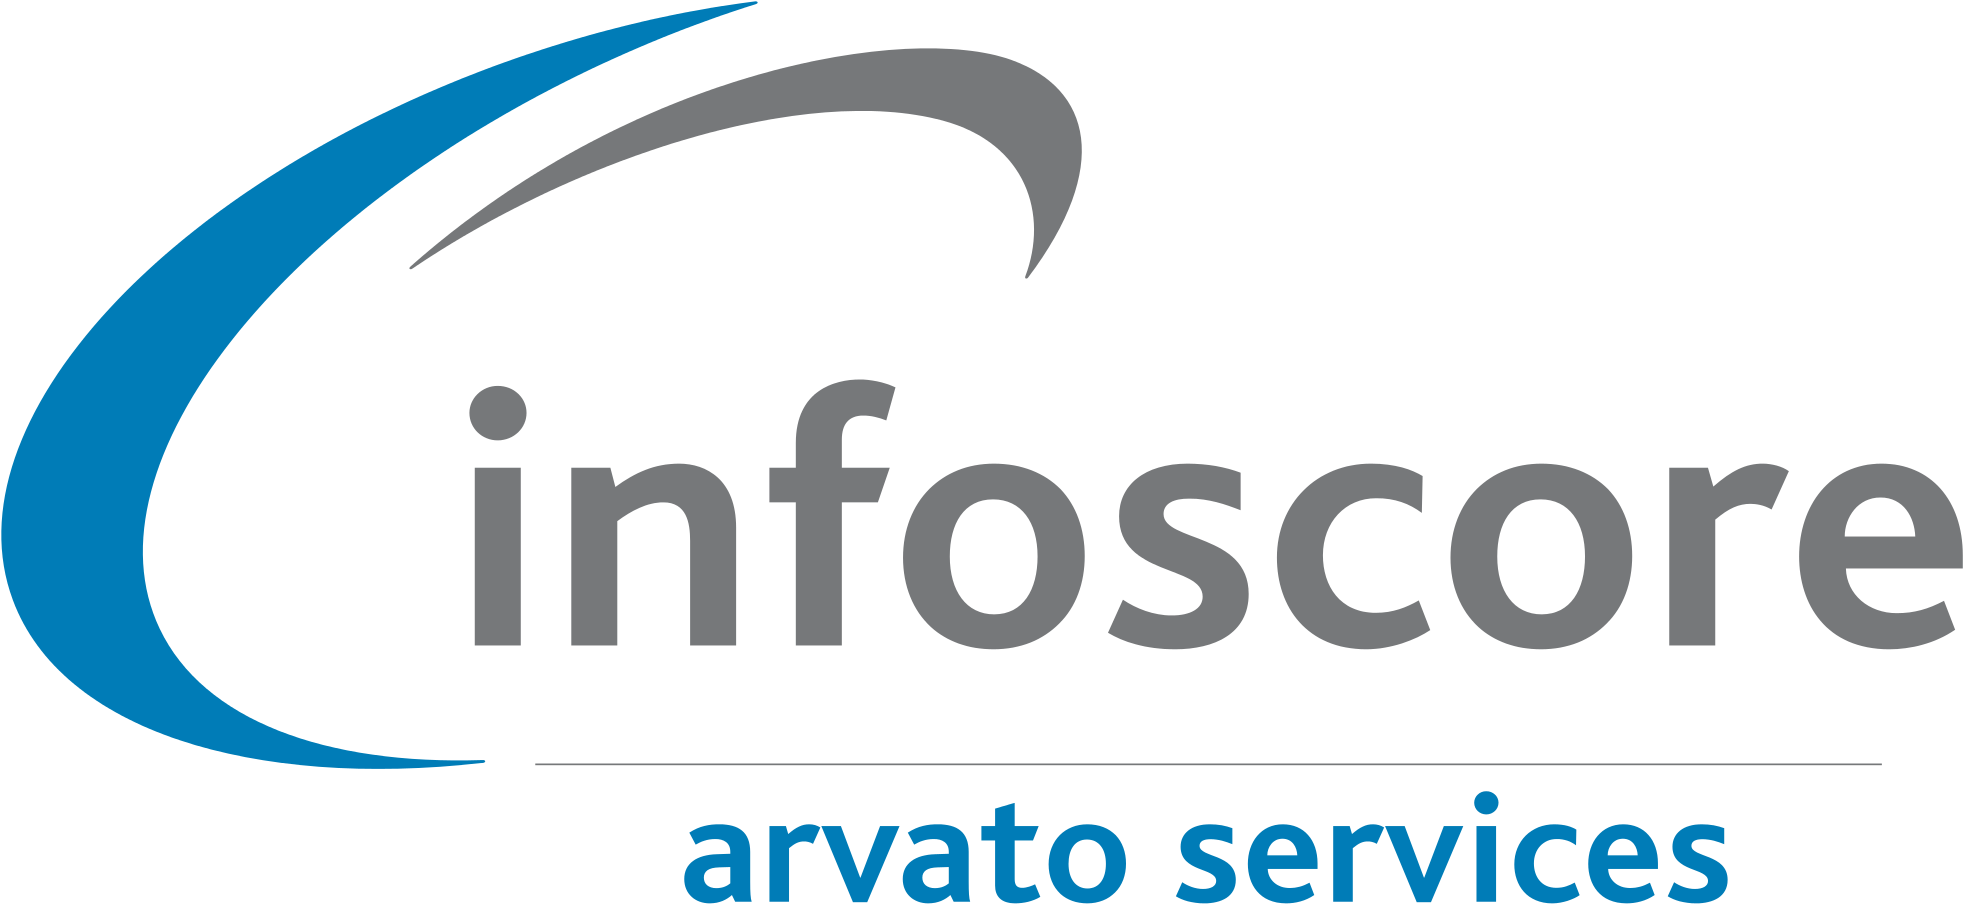 Open - Arvato Infoscore (2000x940)